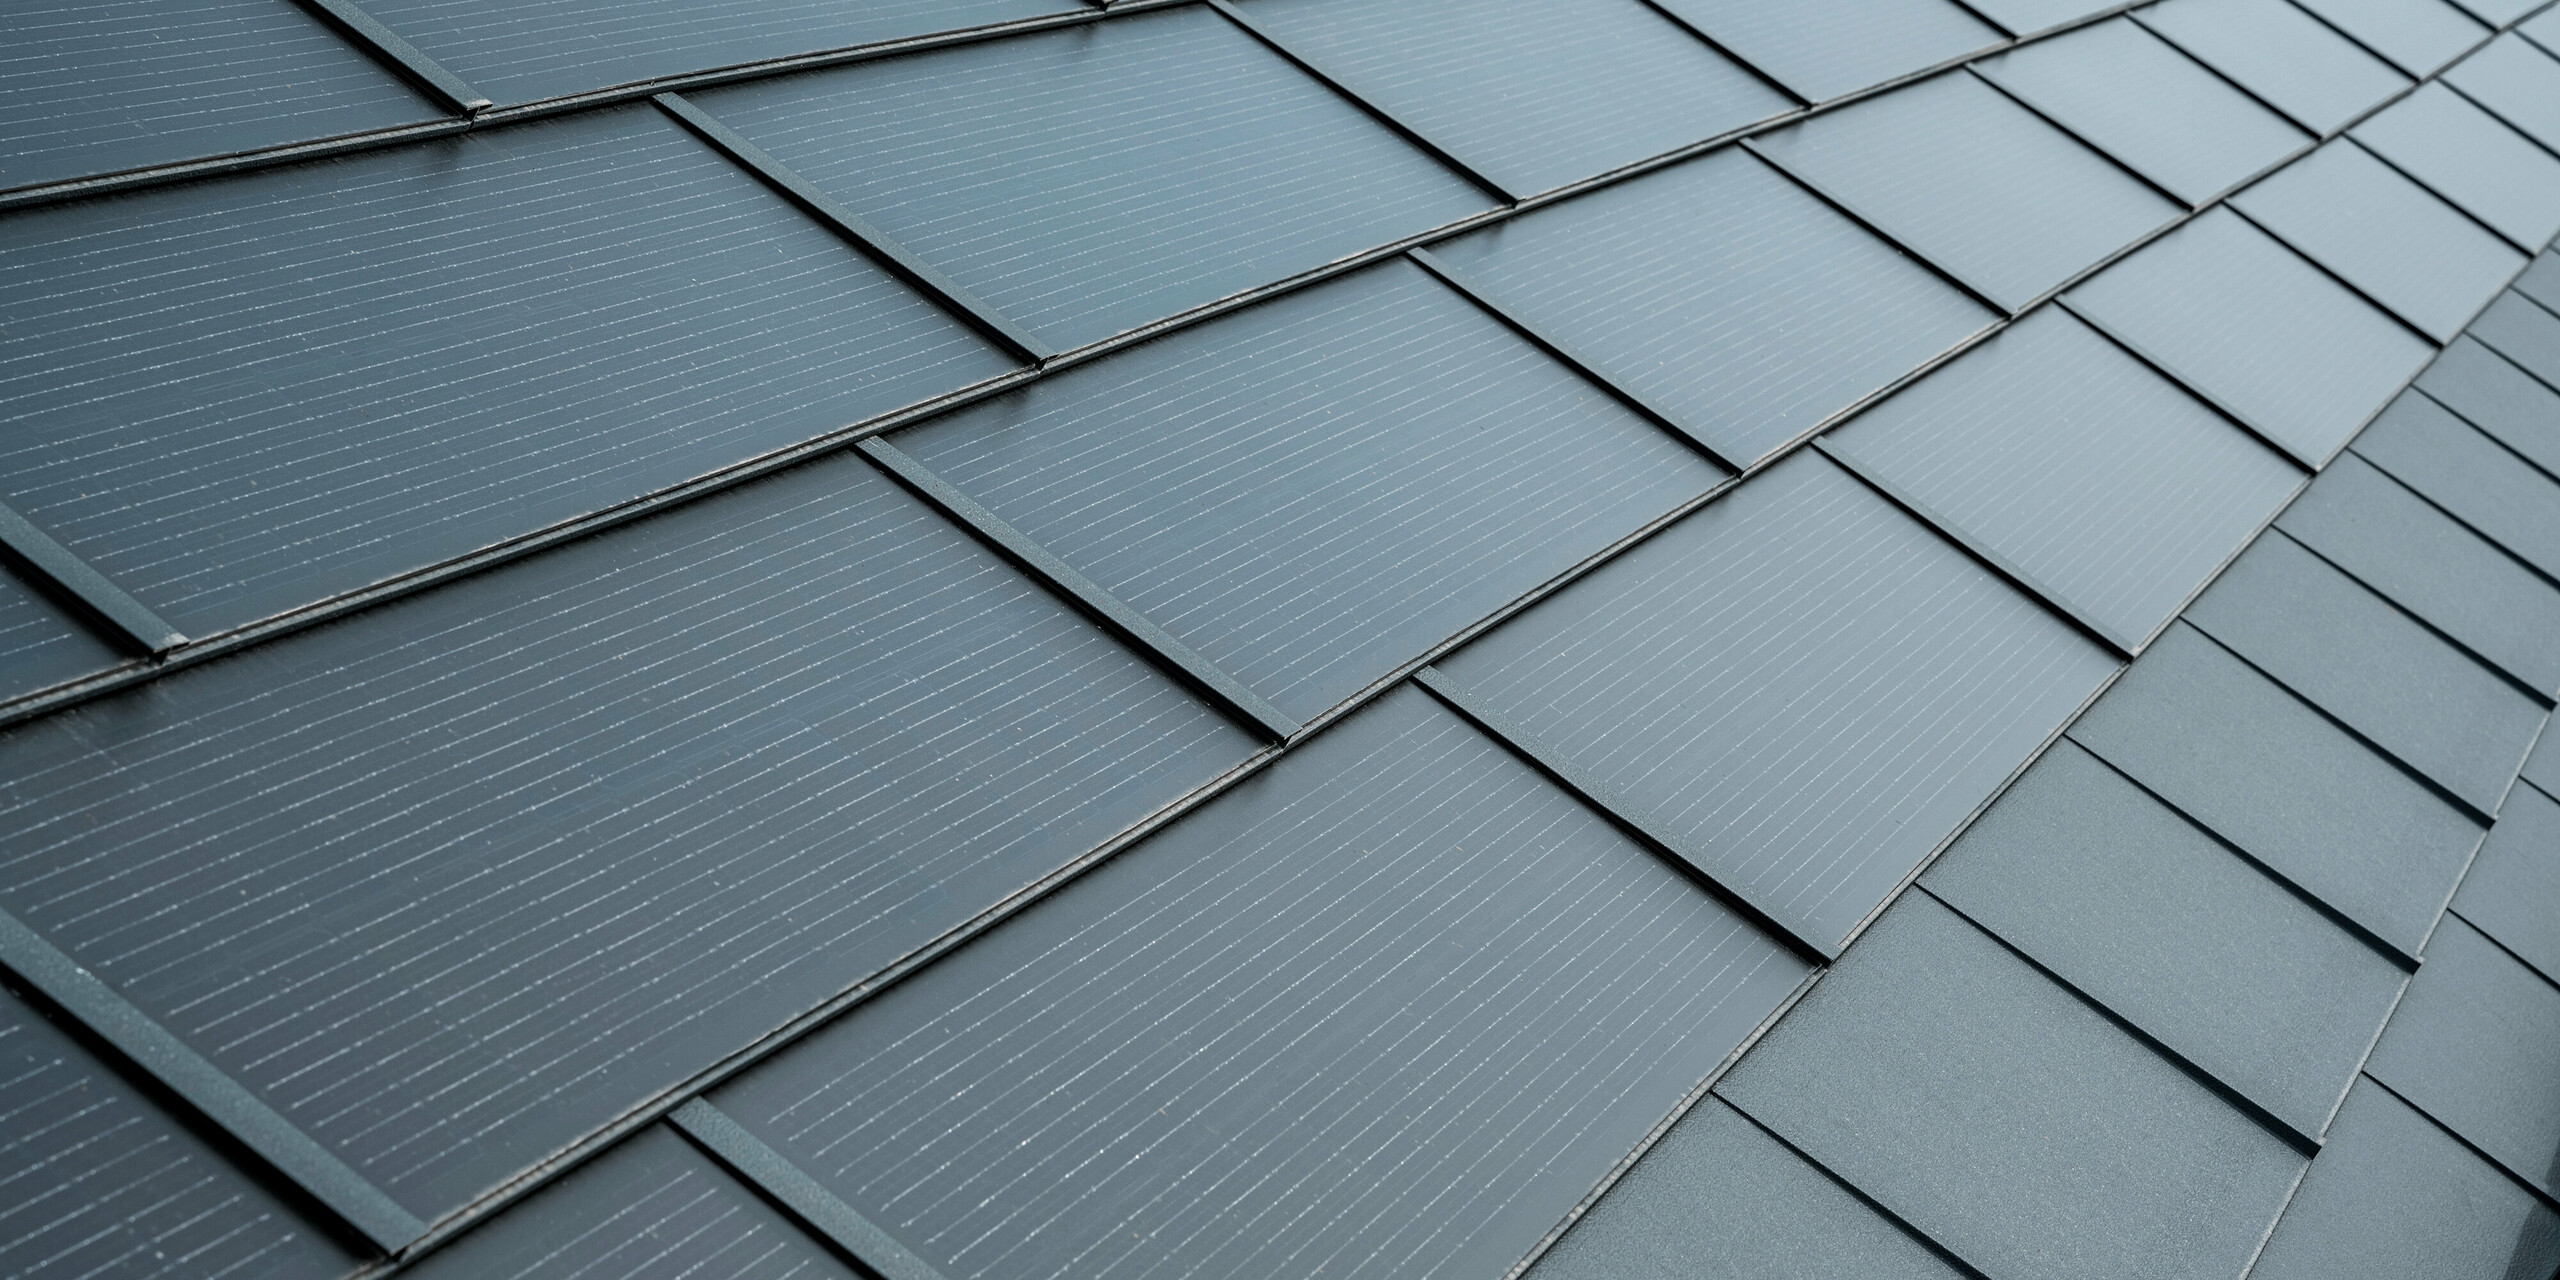 Bližnji posnetek strehe s PREFA solarnimi strešnimi ploščami v antracitni barvi. Solarni moduli so elegantno integrirani v streho in se harmonično prilegajo celotnemu videzu. Strešne plošče imajo teksturirano površino z drobnimi linijami, ki zagotavljajo dodatno estetiko, hkrati pa služijo kot funkcionalna in energetsko učinkovita rešitev.